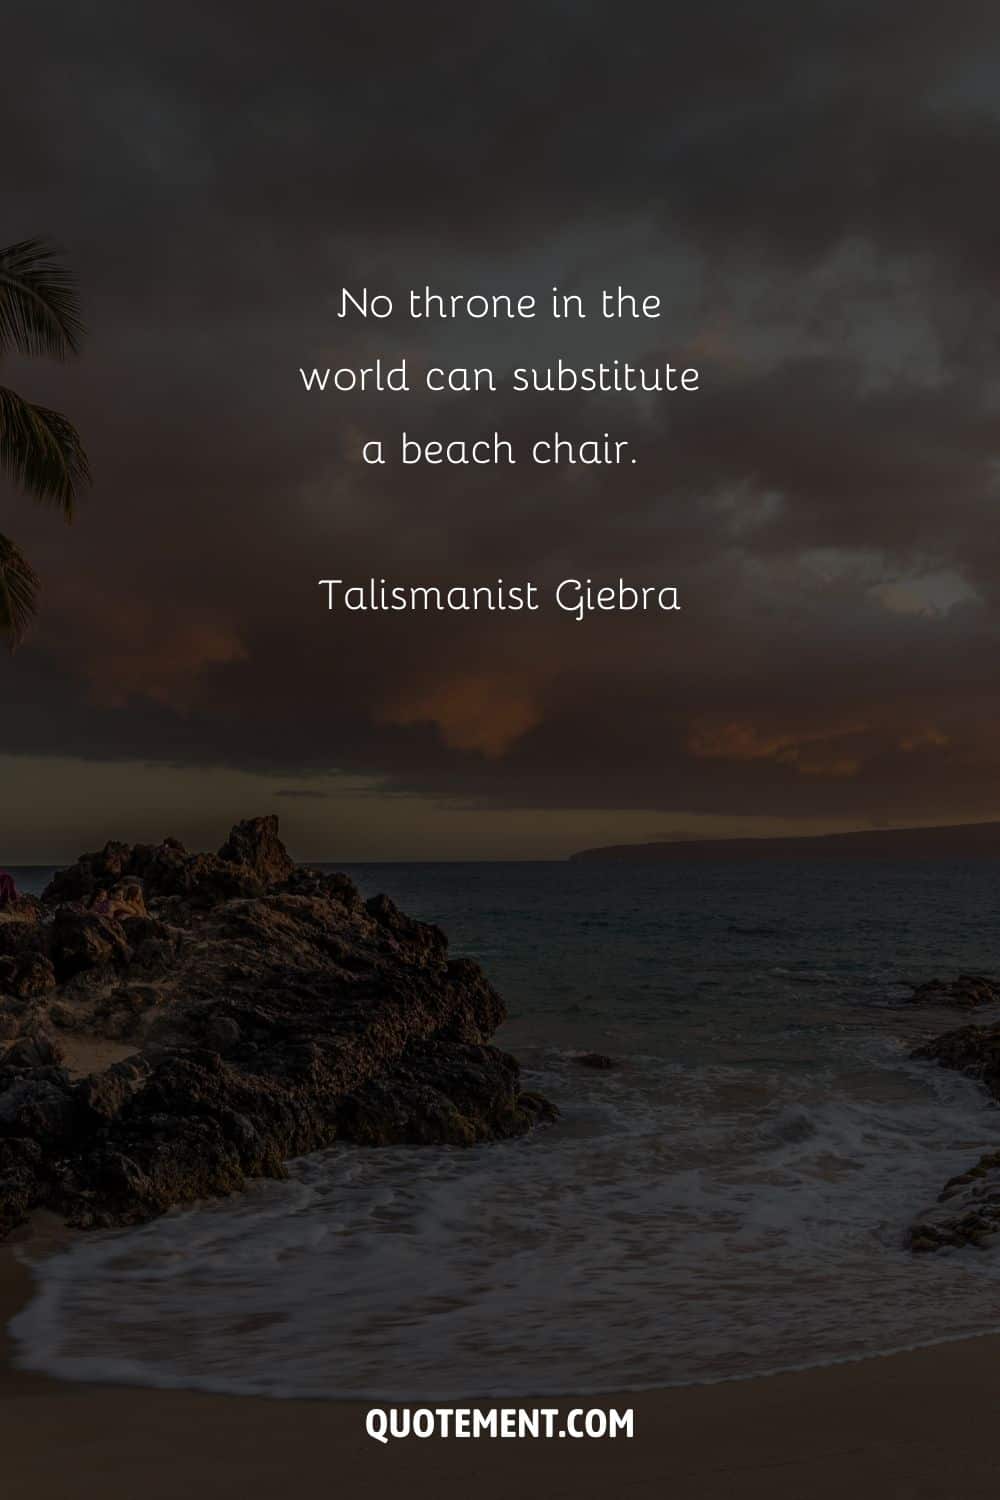 No throne in the world can substitute a beach chair. – Talismanist Giebra